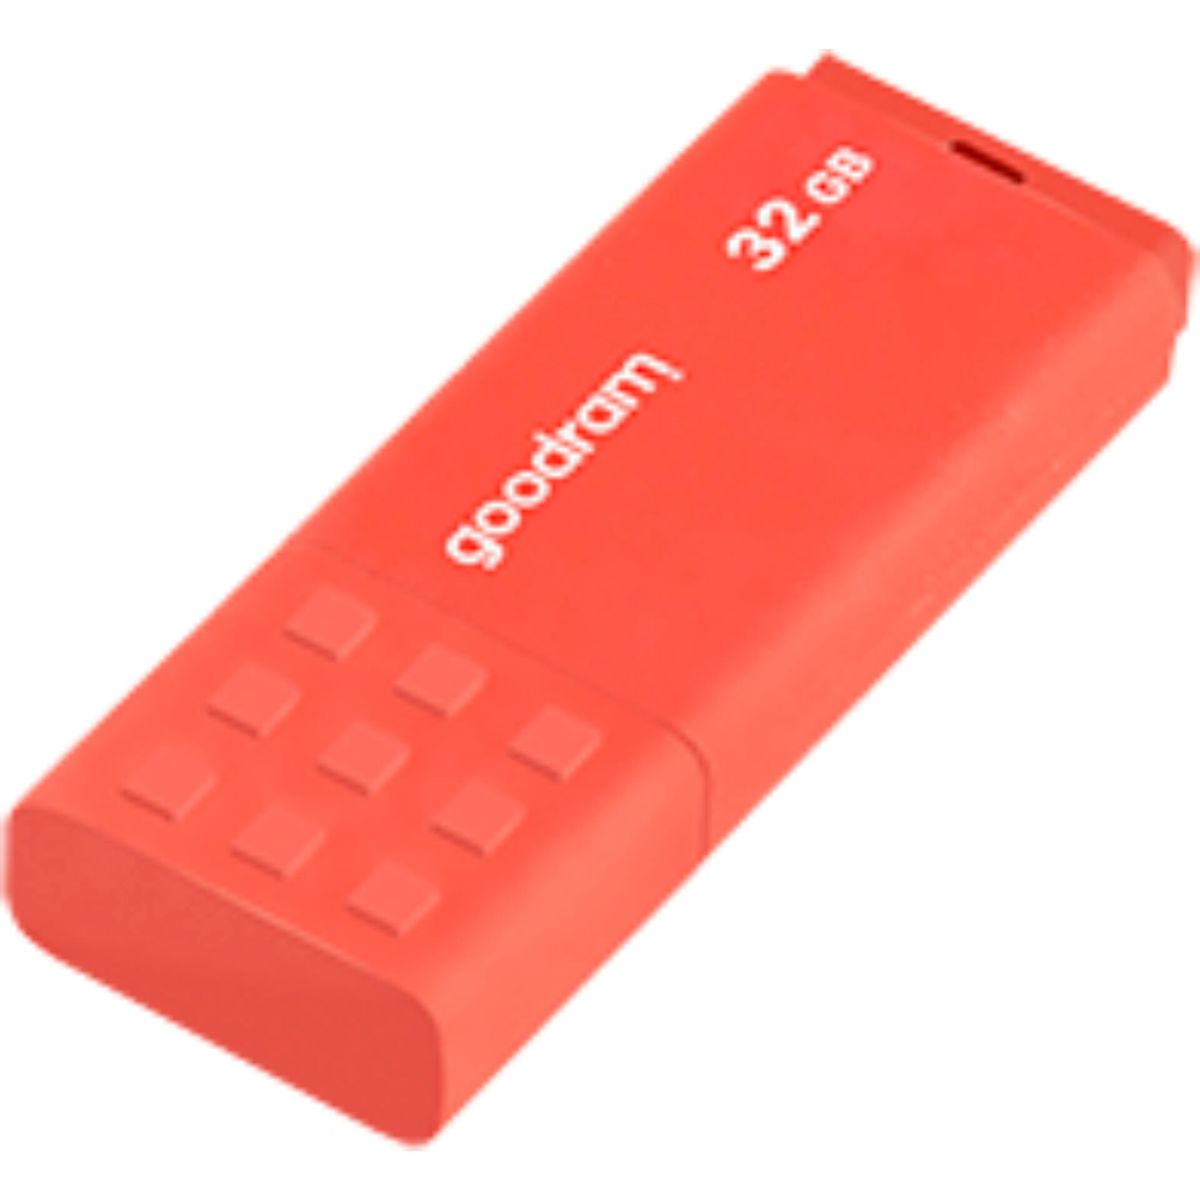 GOODRAM UME3 32 3.0 Orange GB) USB 32GB Stick (orange, USB